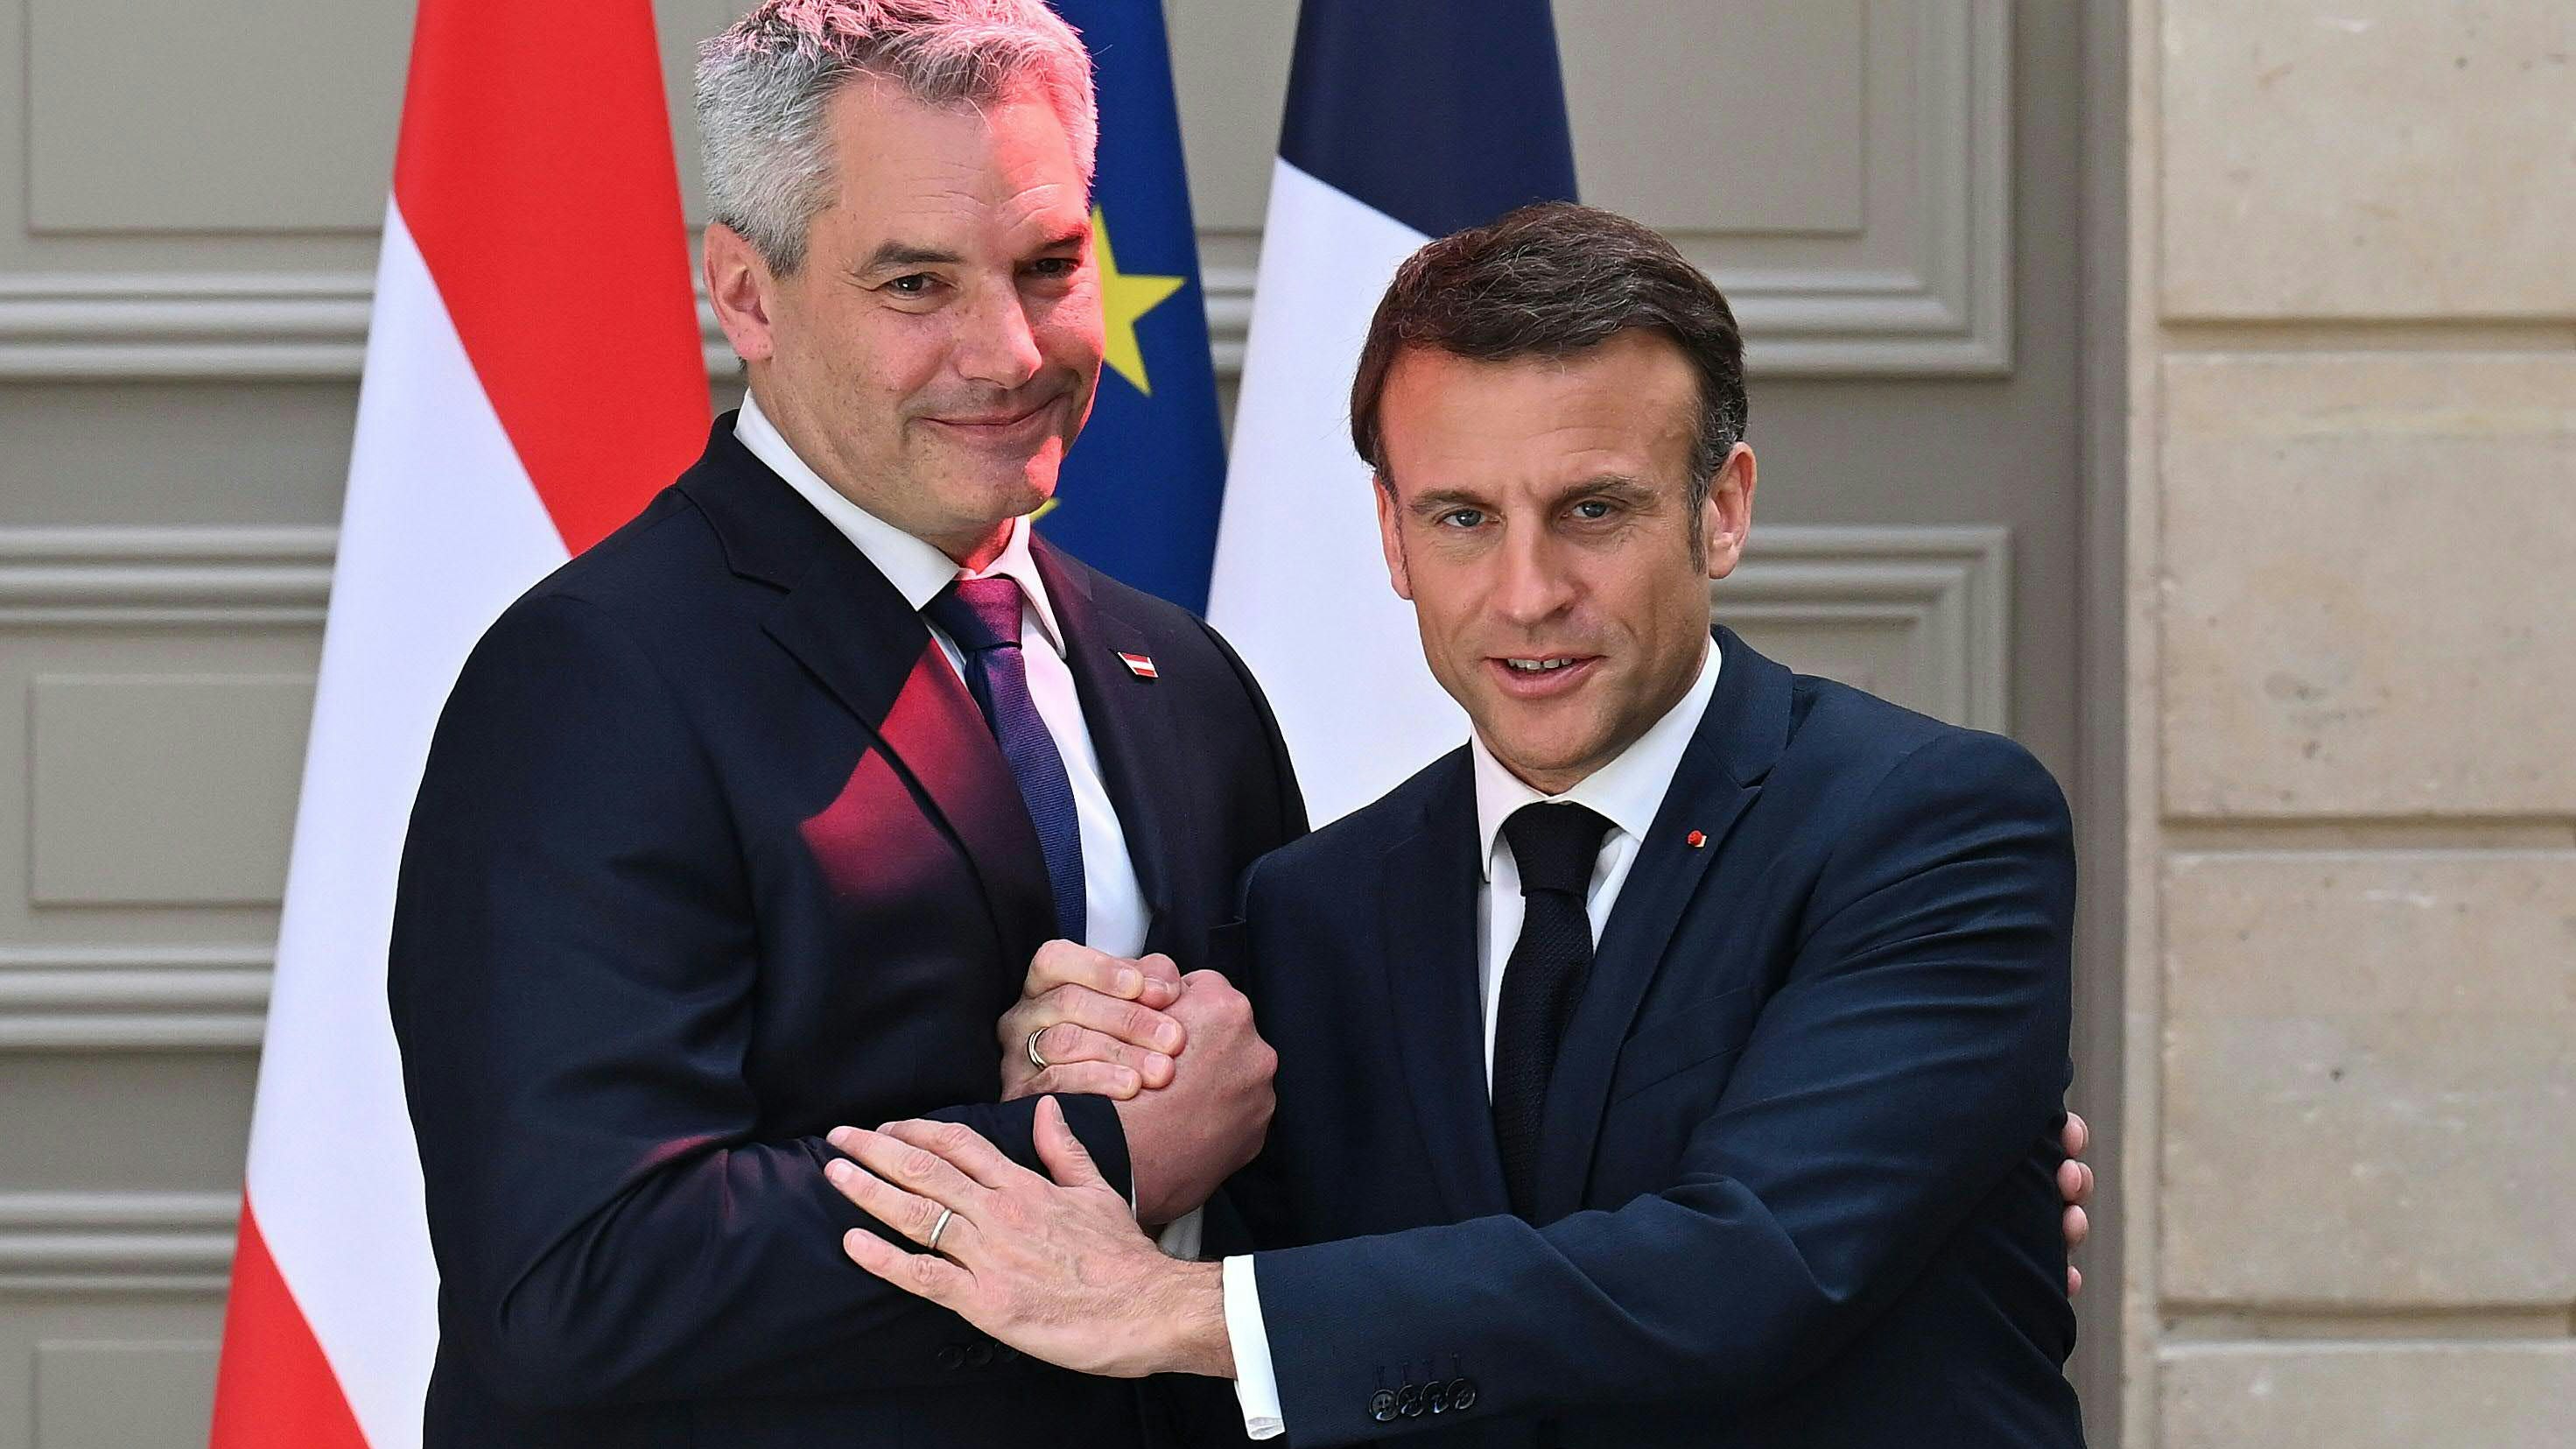 Tut beim Zusehen weh: Bundeskanzler Karl Nehammer beim Händedruck mit Frankreichs Präsident Emmanuel Macron